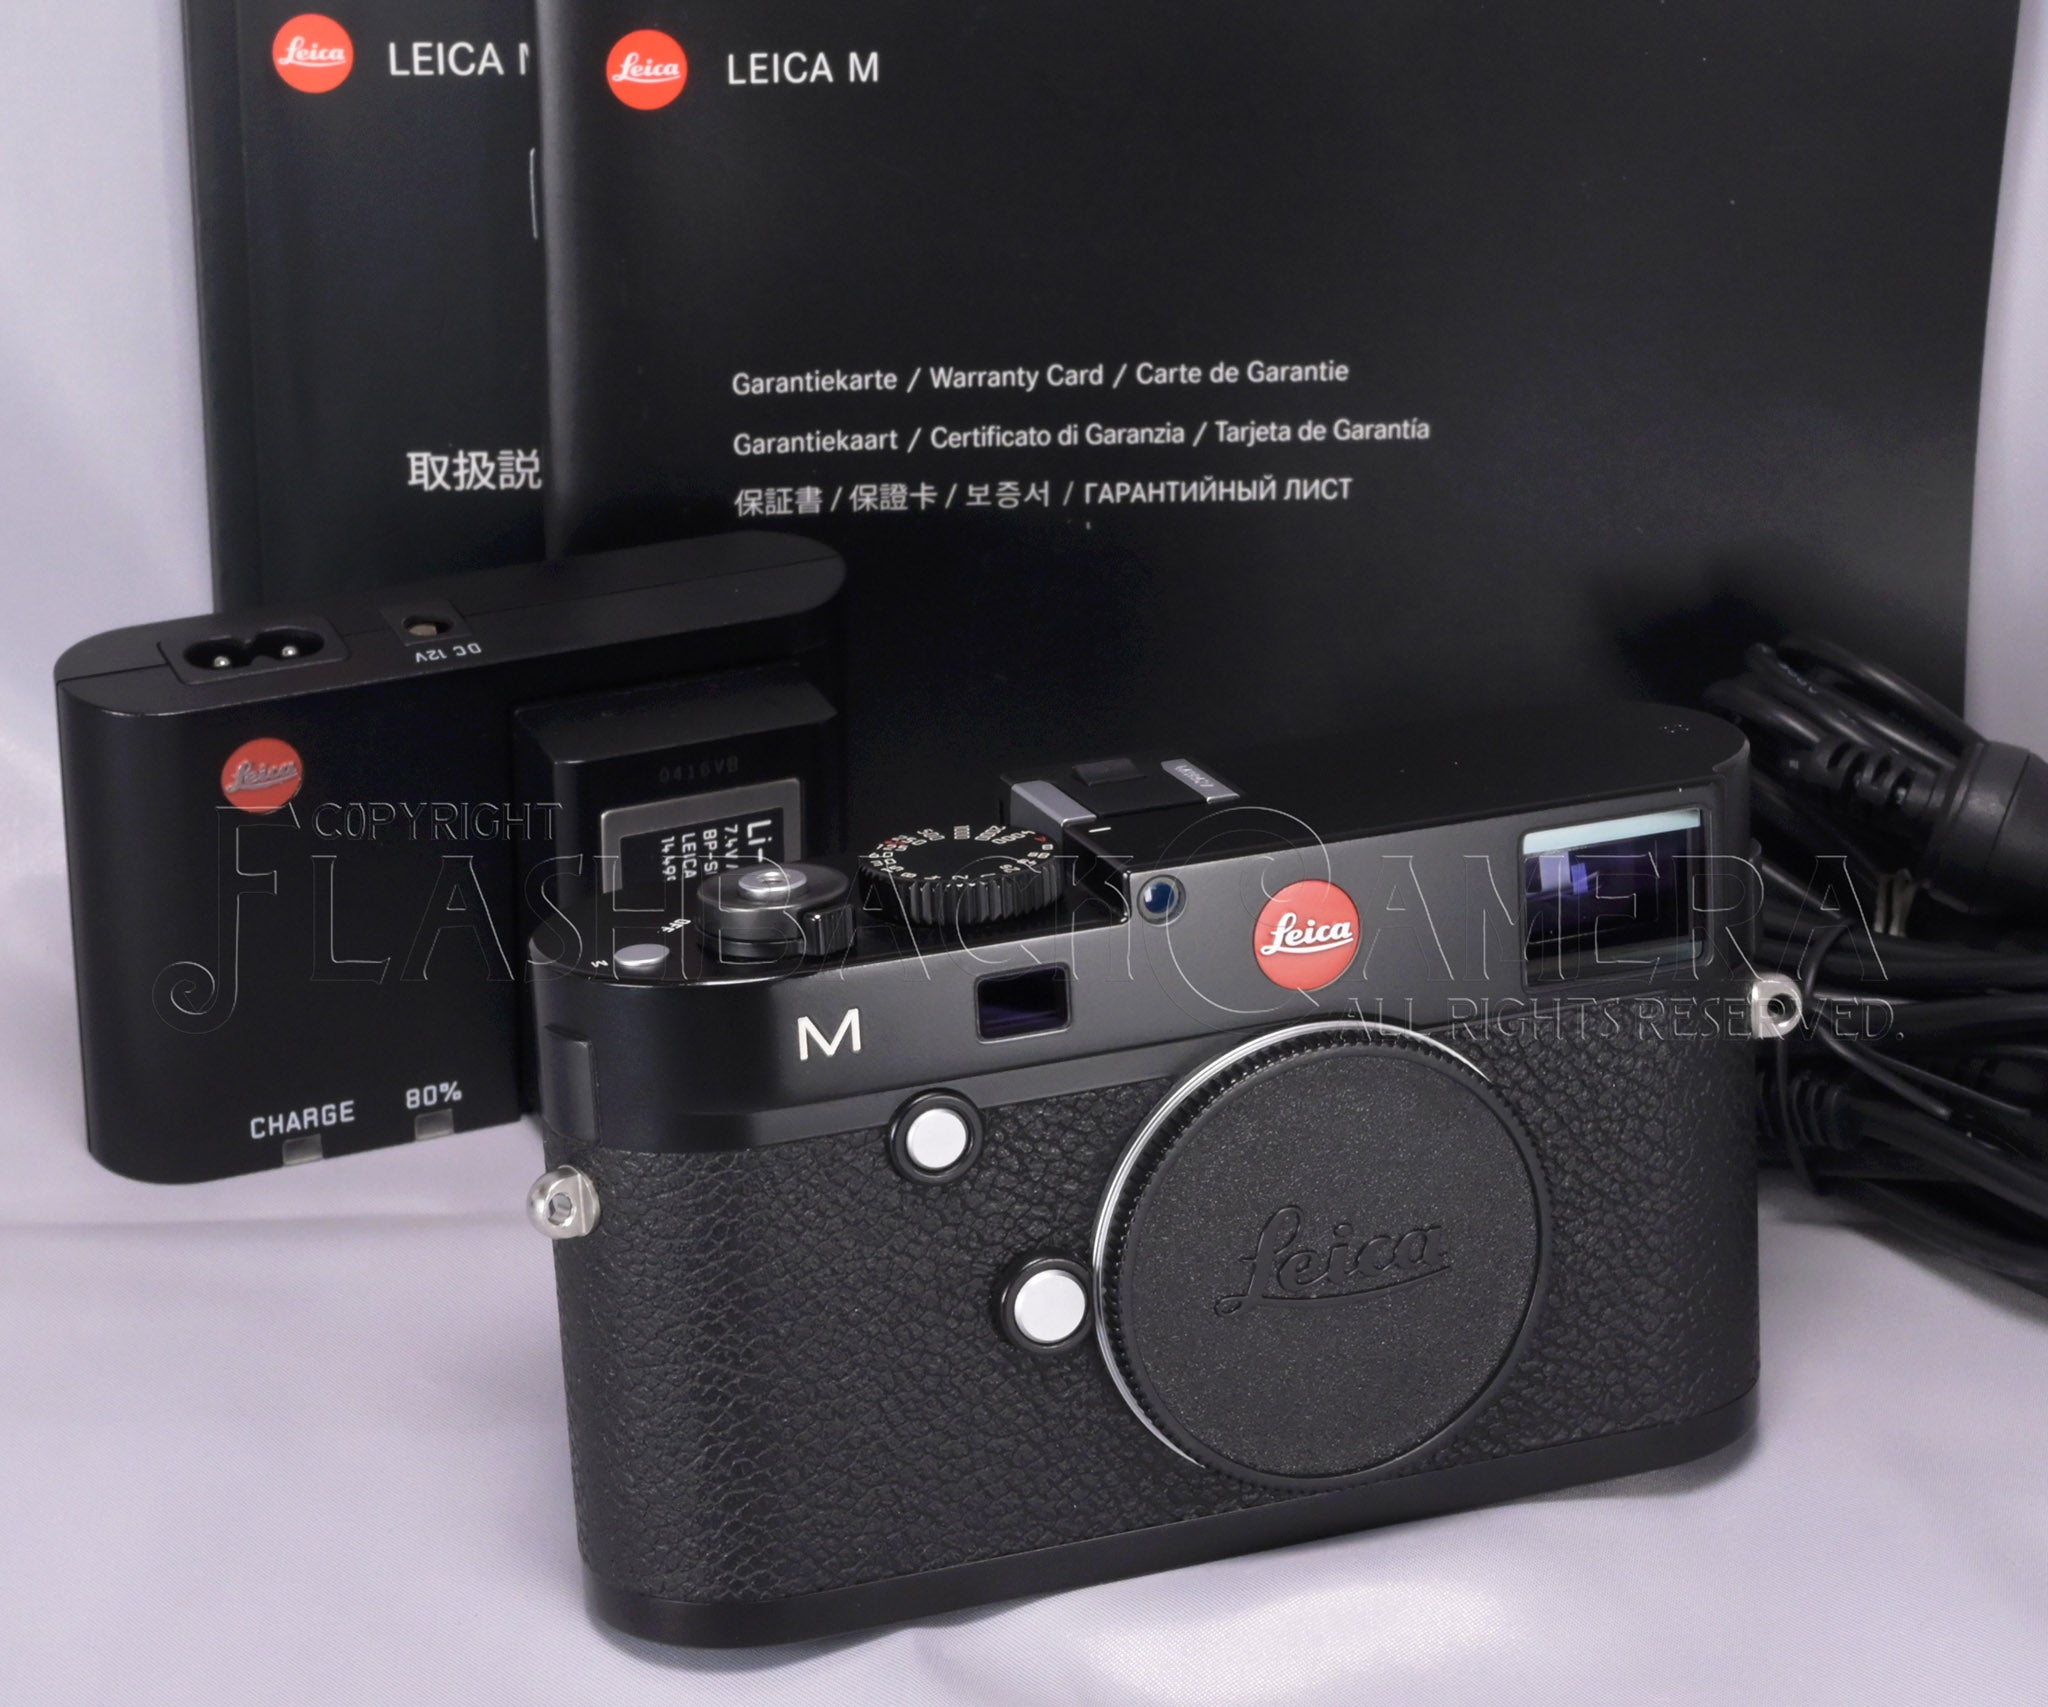 Leica – tagged 